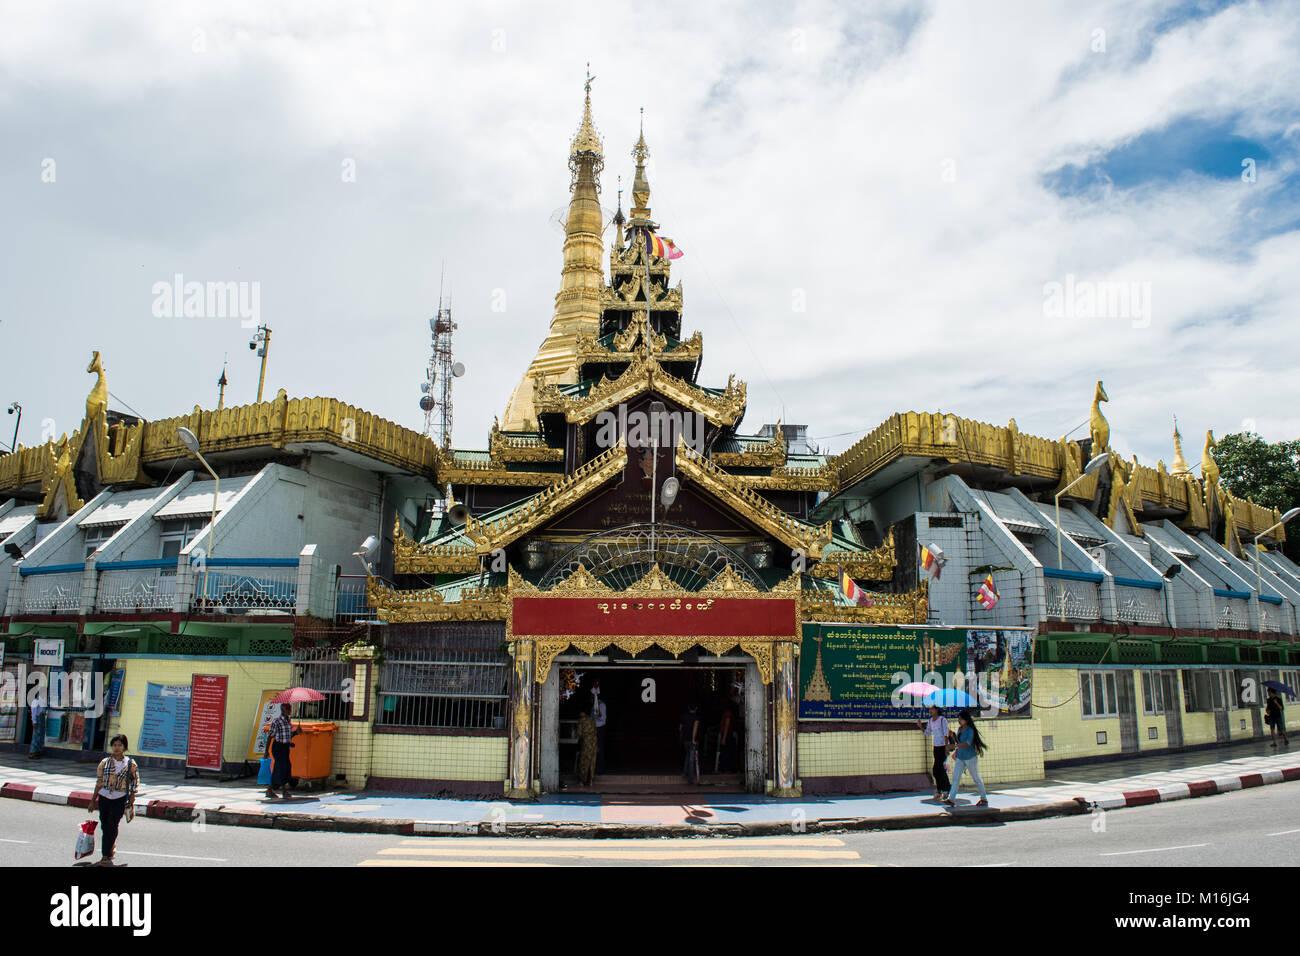 L'extérieur de la pagode Sule et stupa doré, à un carrefour et utilisé comme un îlot rond-point avec des magasins dans le centre-ville de Yangon, Myanmar Birmanie Asie Banque D'Images